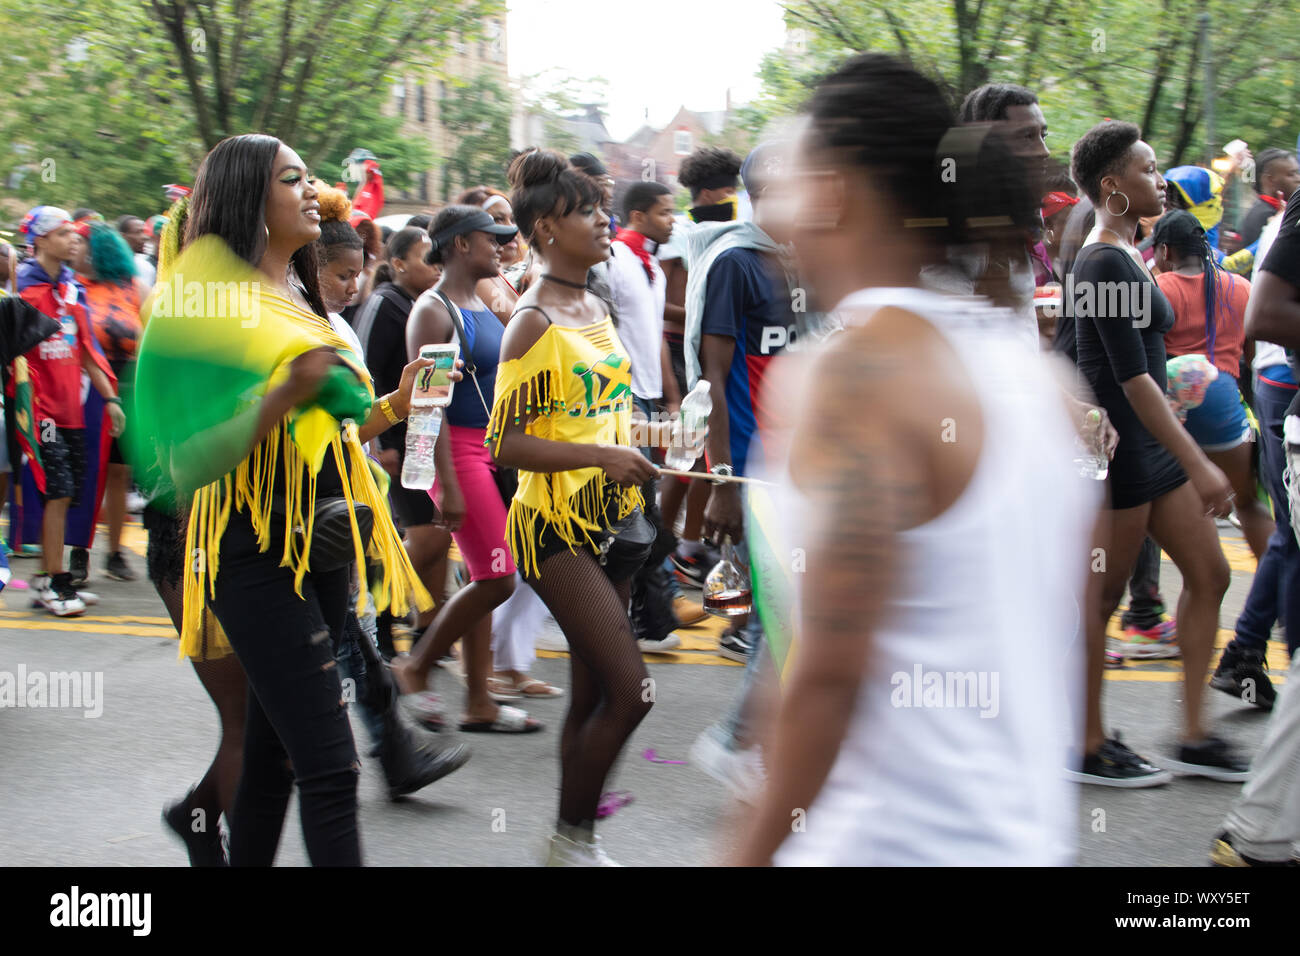 Tanzend zu lauter Musik laufen Teilnehmer der West Indian Day Parade en la Ciudad de Nueva York un den Zuschauern vorbei und animieren diese. Foto de stock